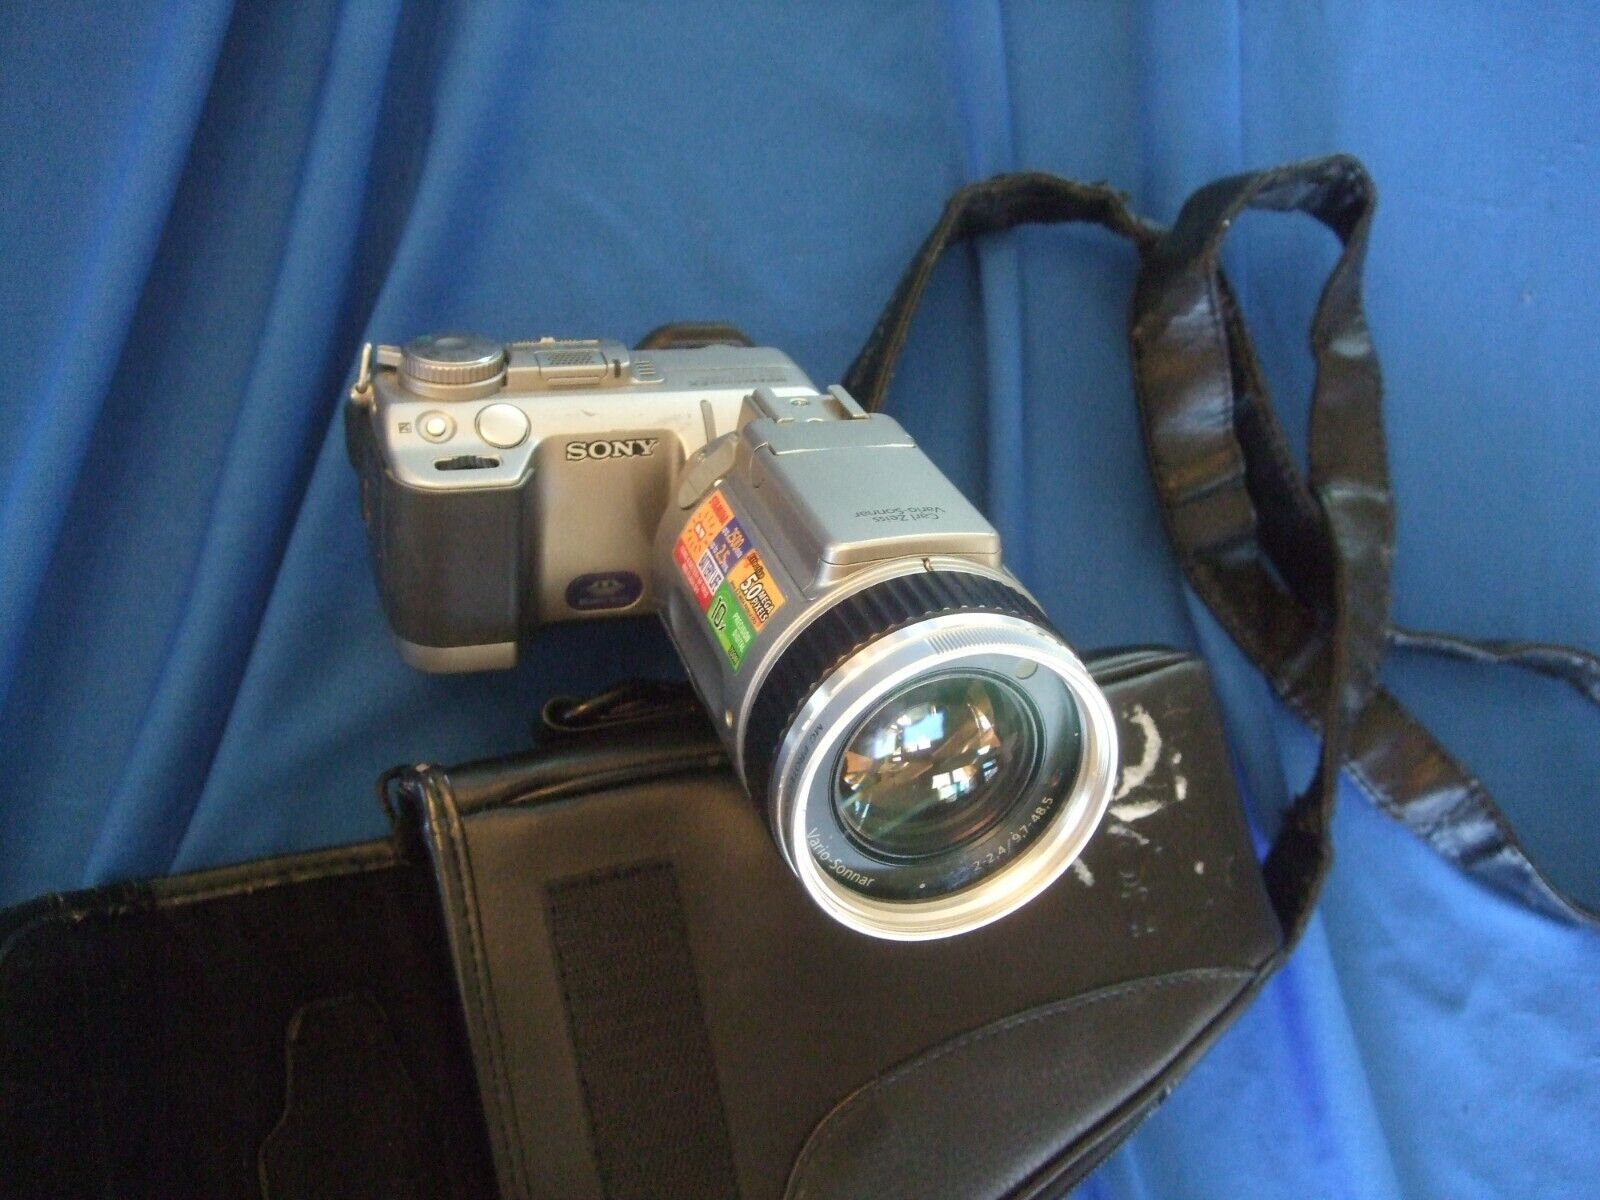 Sony Cyber-shot DSC-F707 4.9MP Digital Camera - Silver for sale online |  eBay